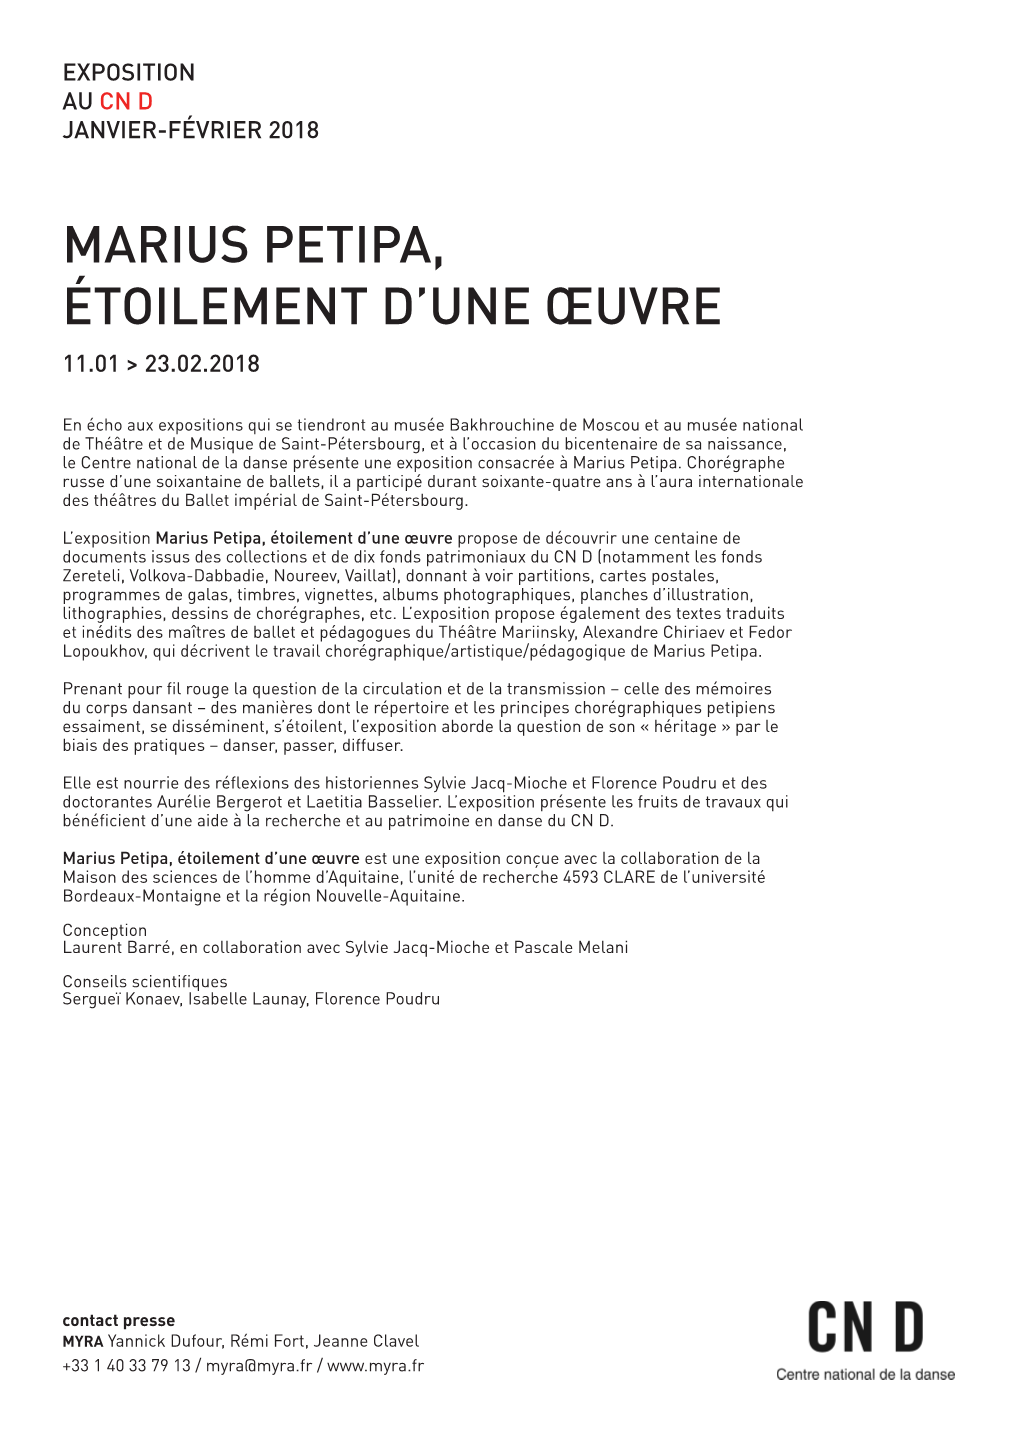 Marius Petipa, Étoilement D'une Œuvre